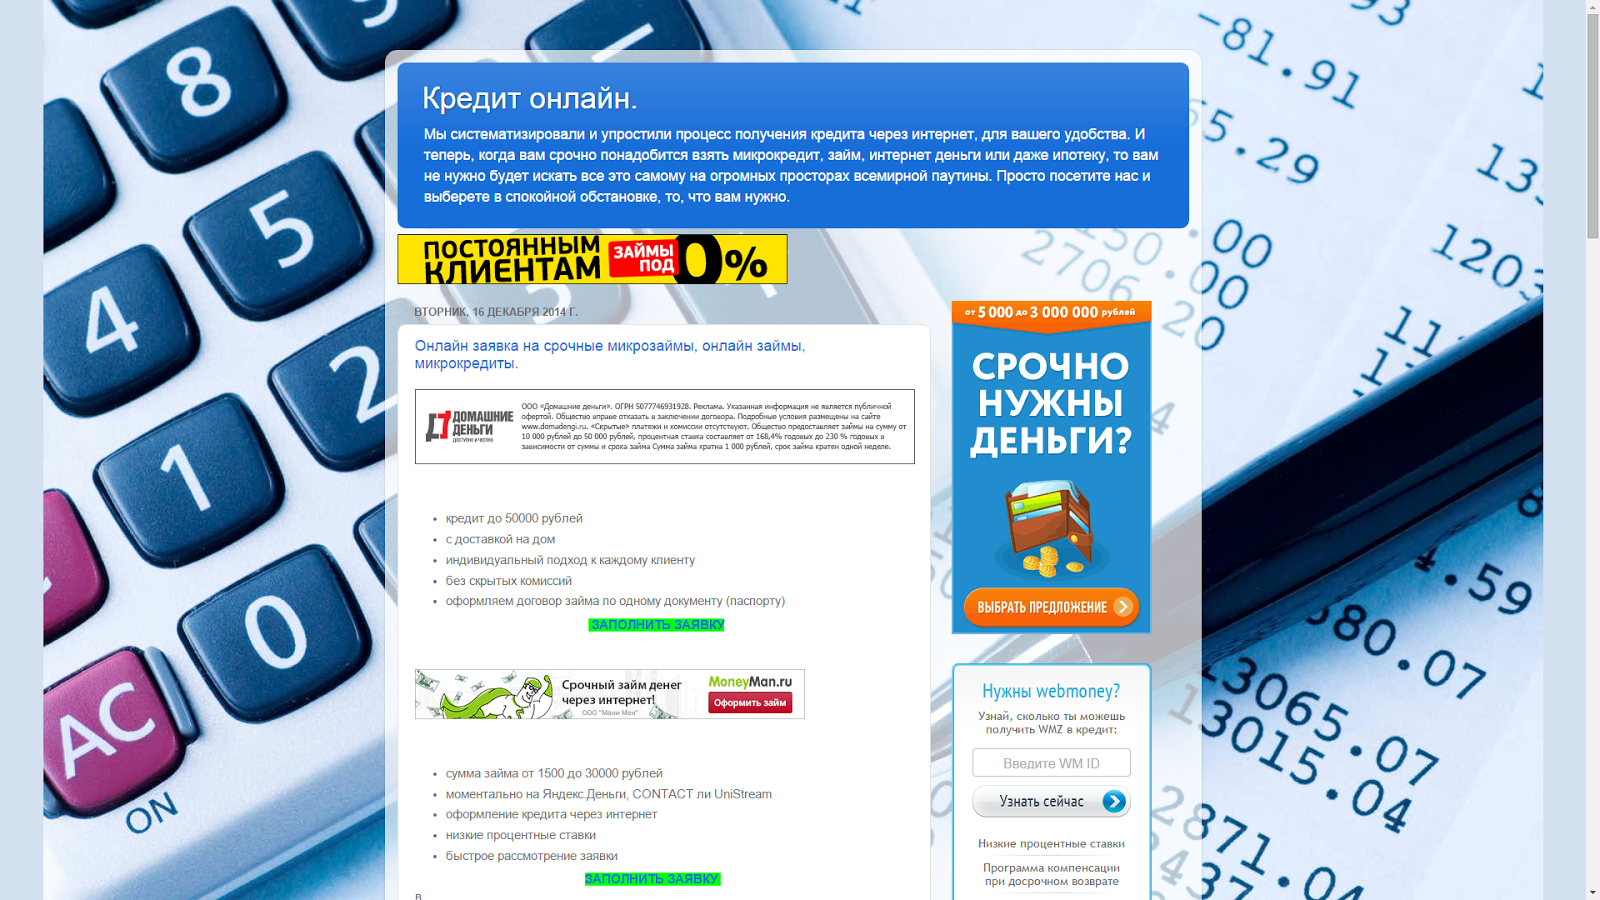 Моментальные займы онлайн через интернет в Назрани на банковскую карту